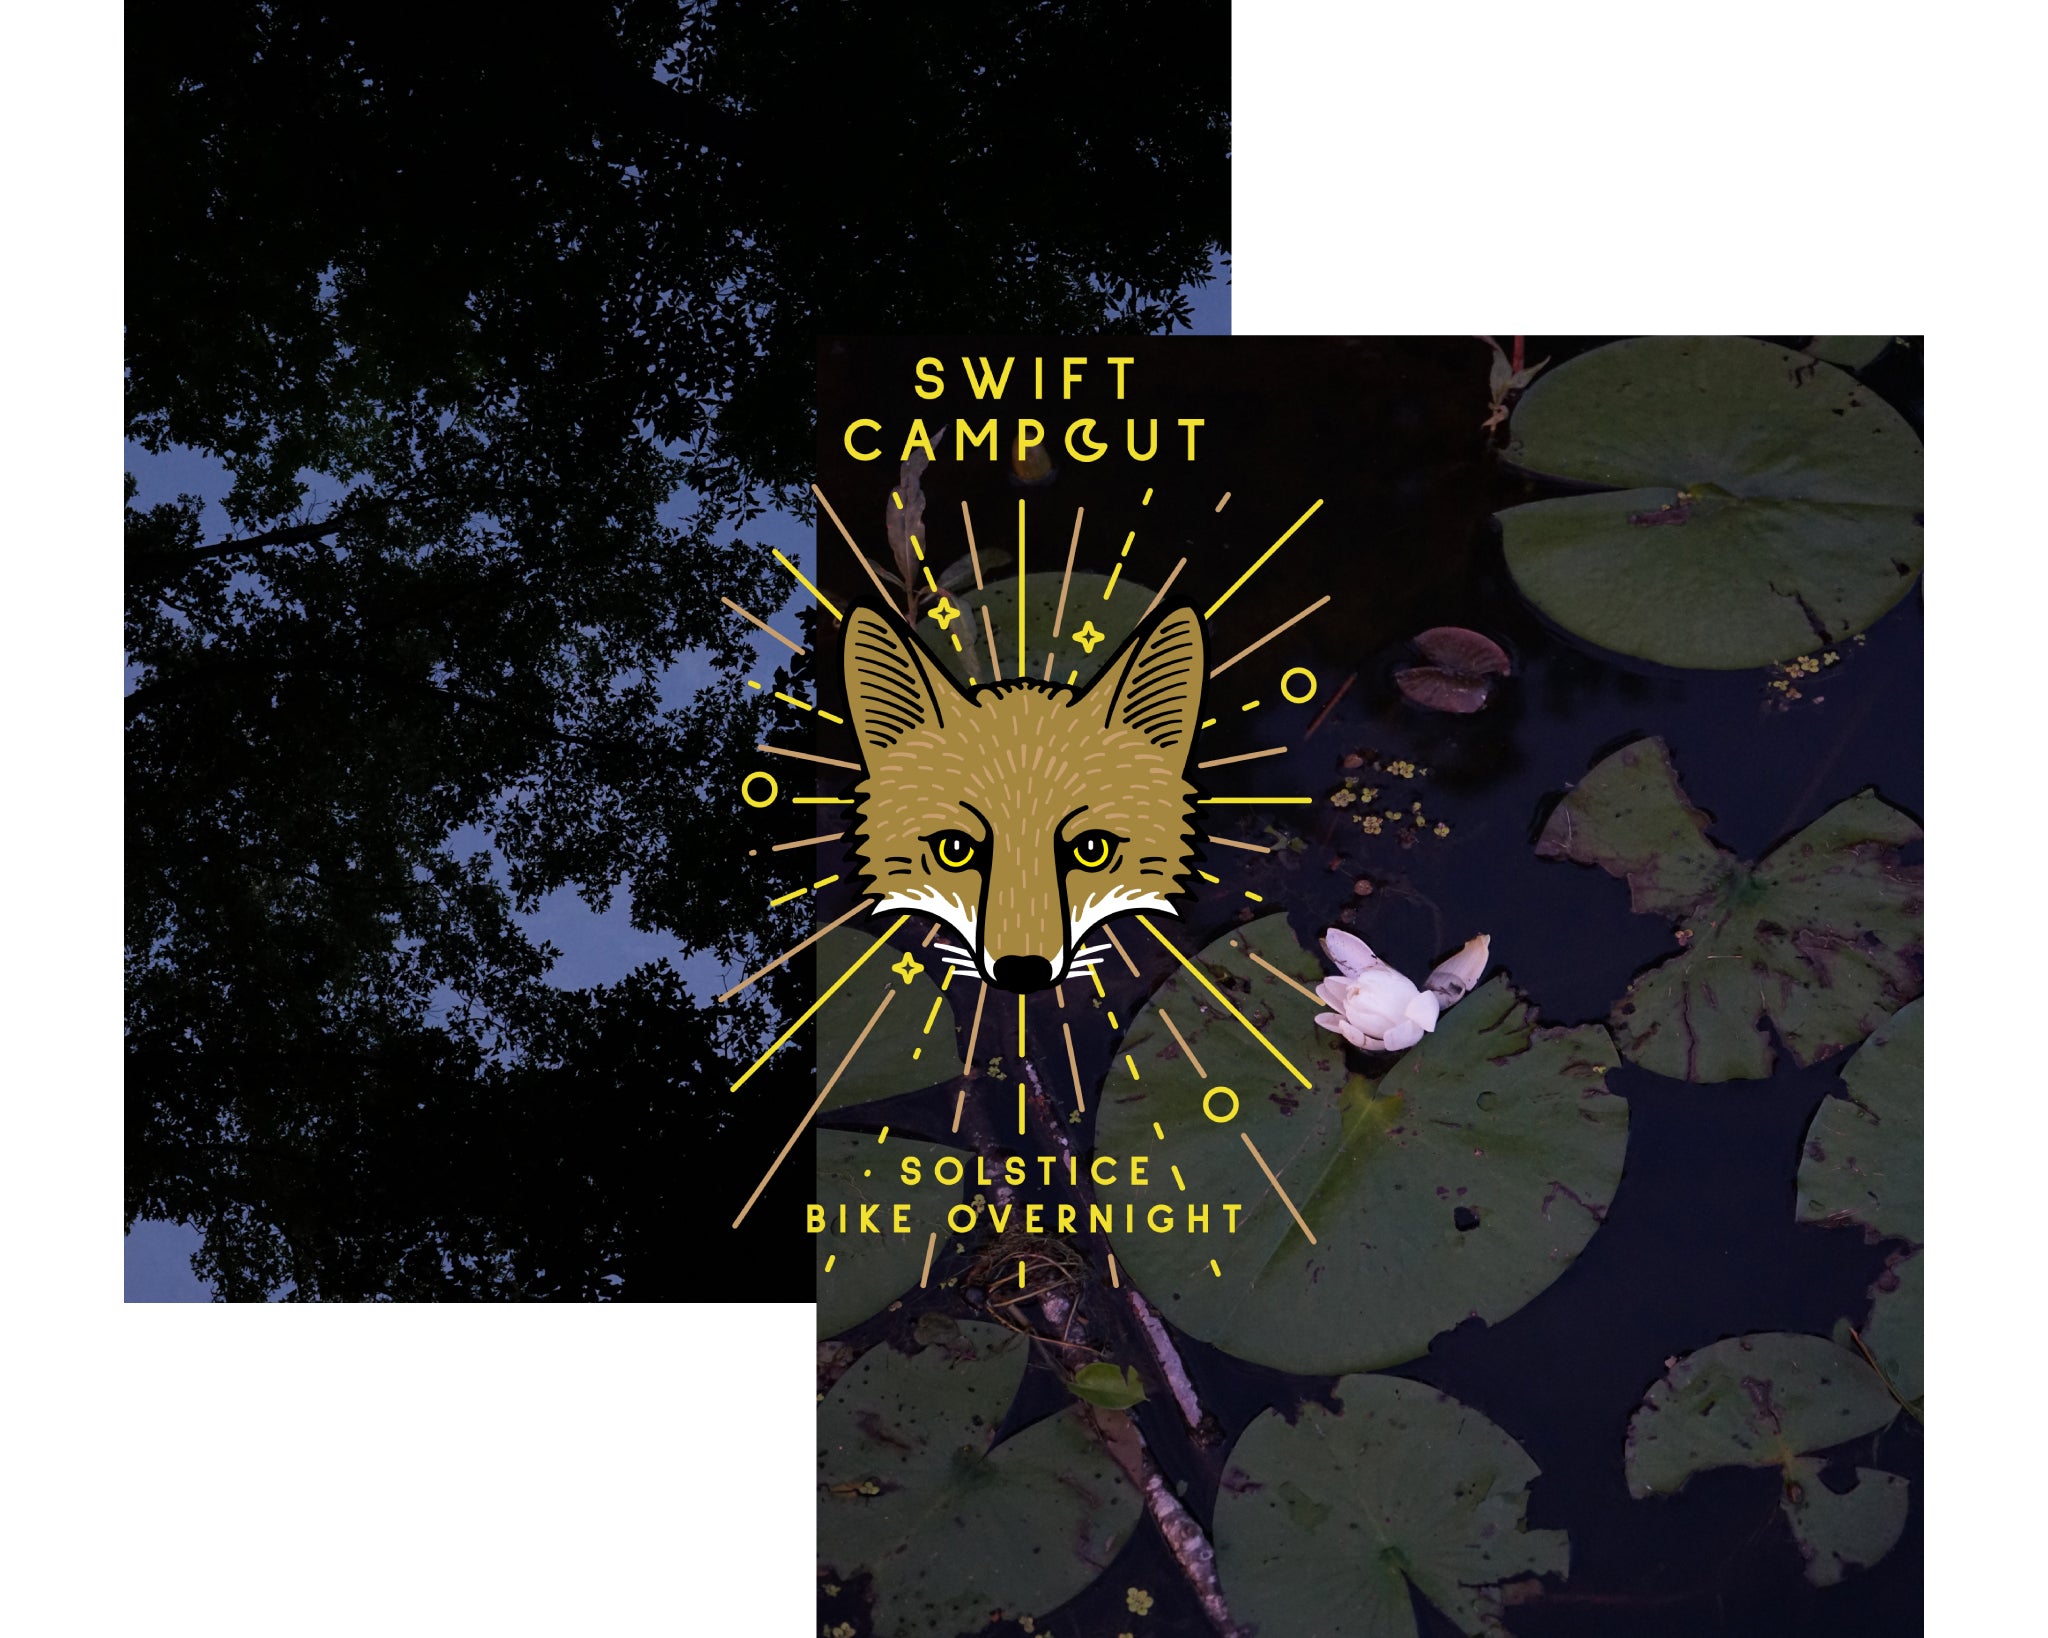 Swift Campout 2019 